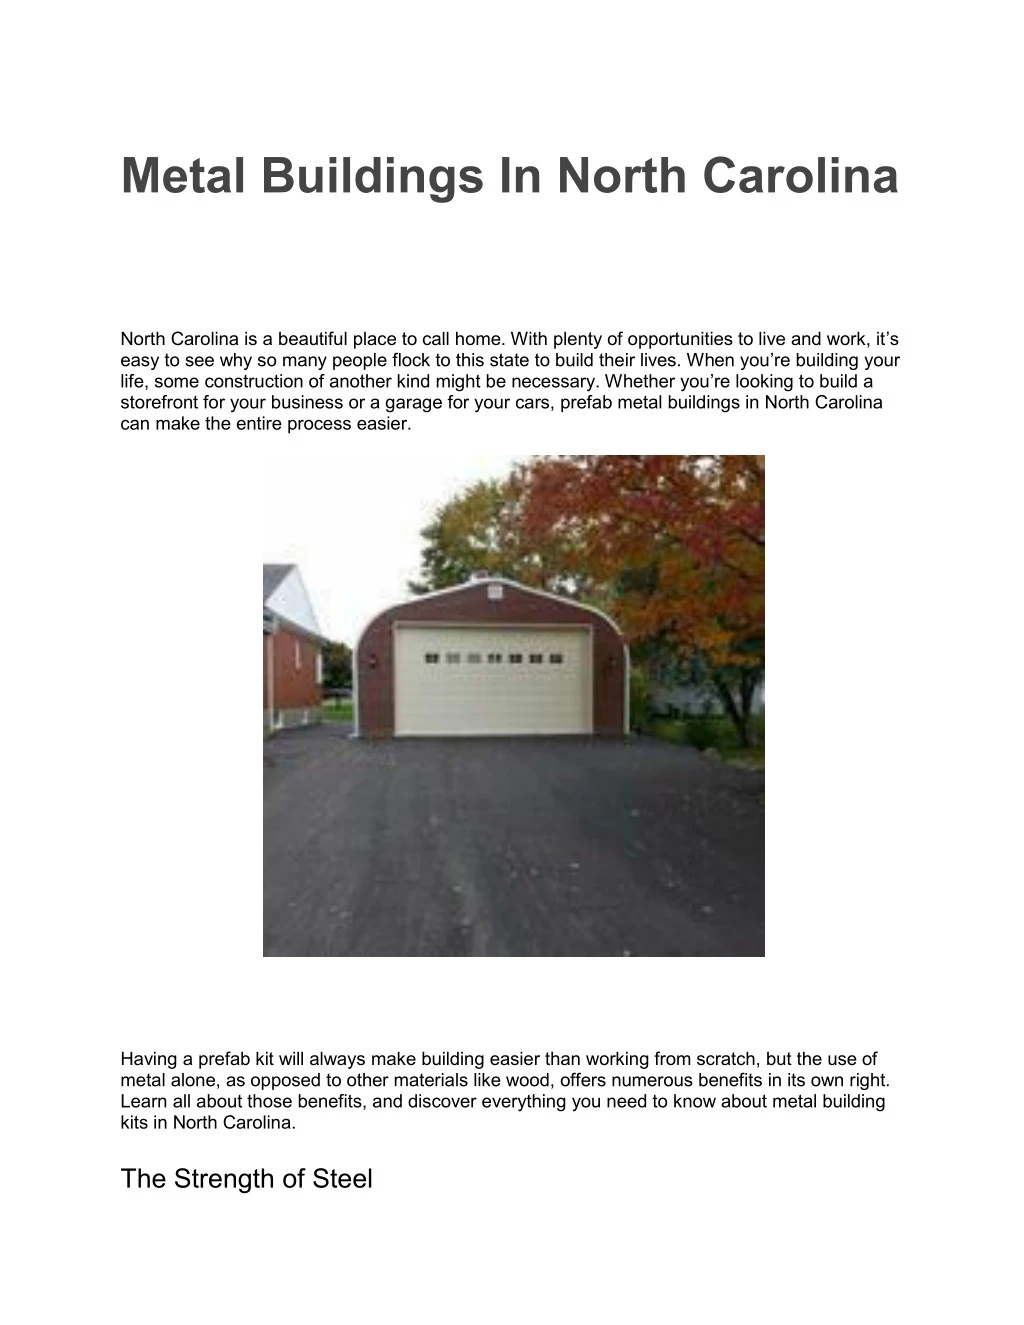 metal buildings in north carolina